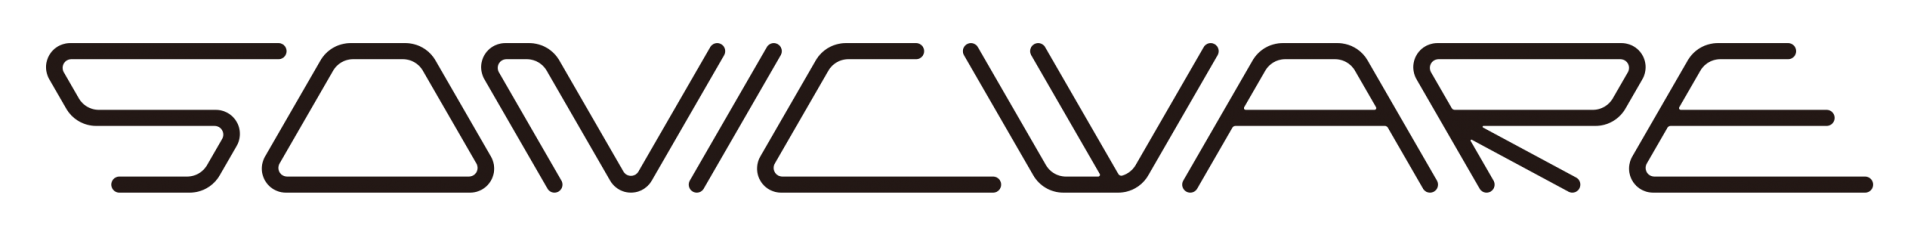 Sonicware logo